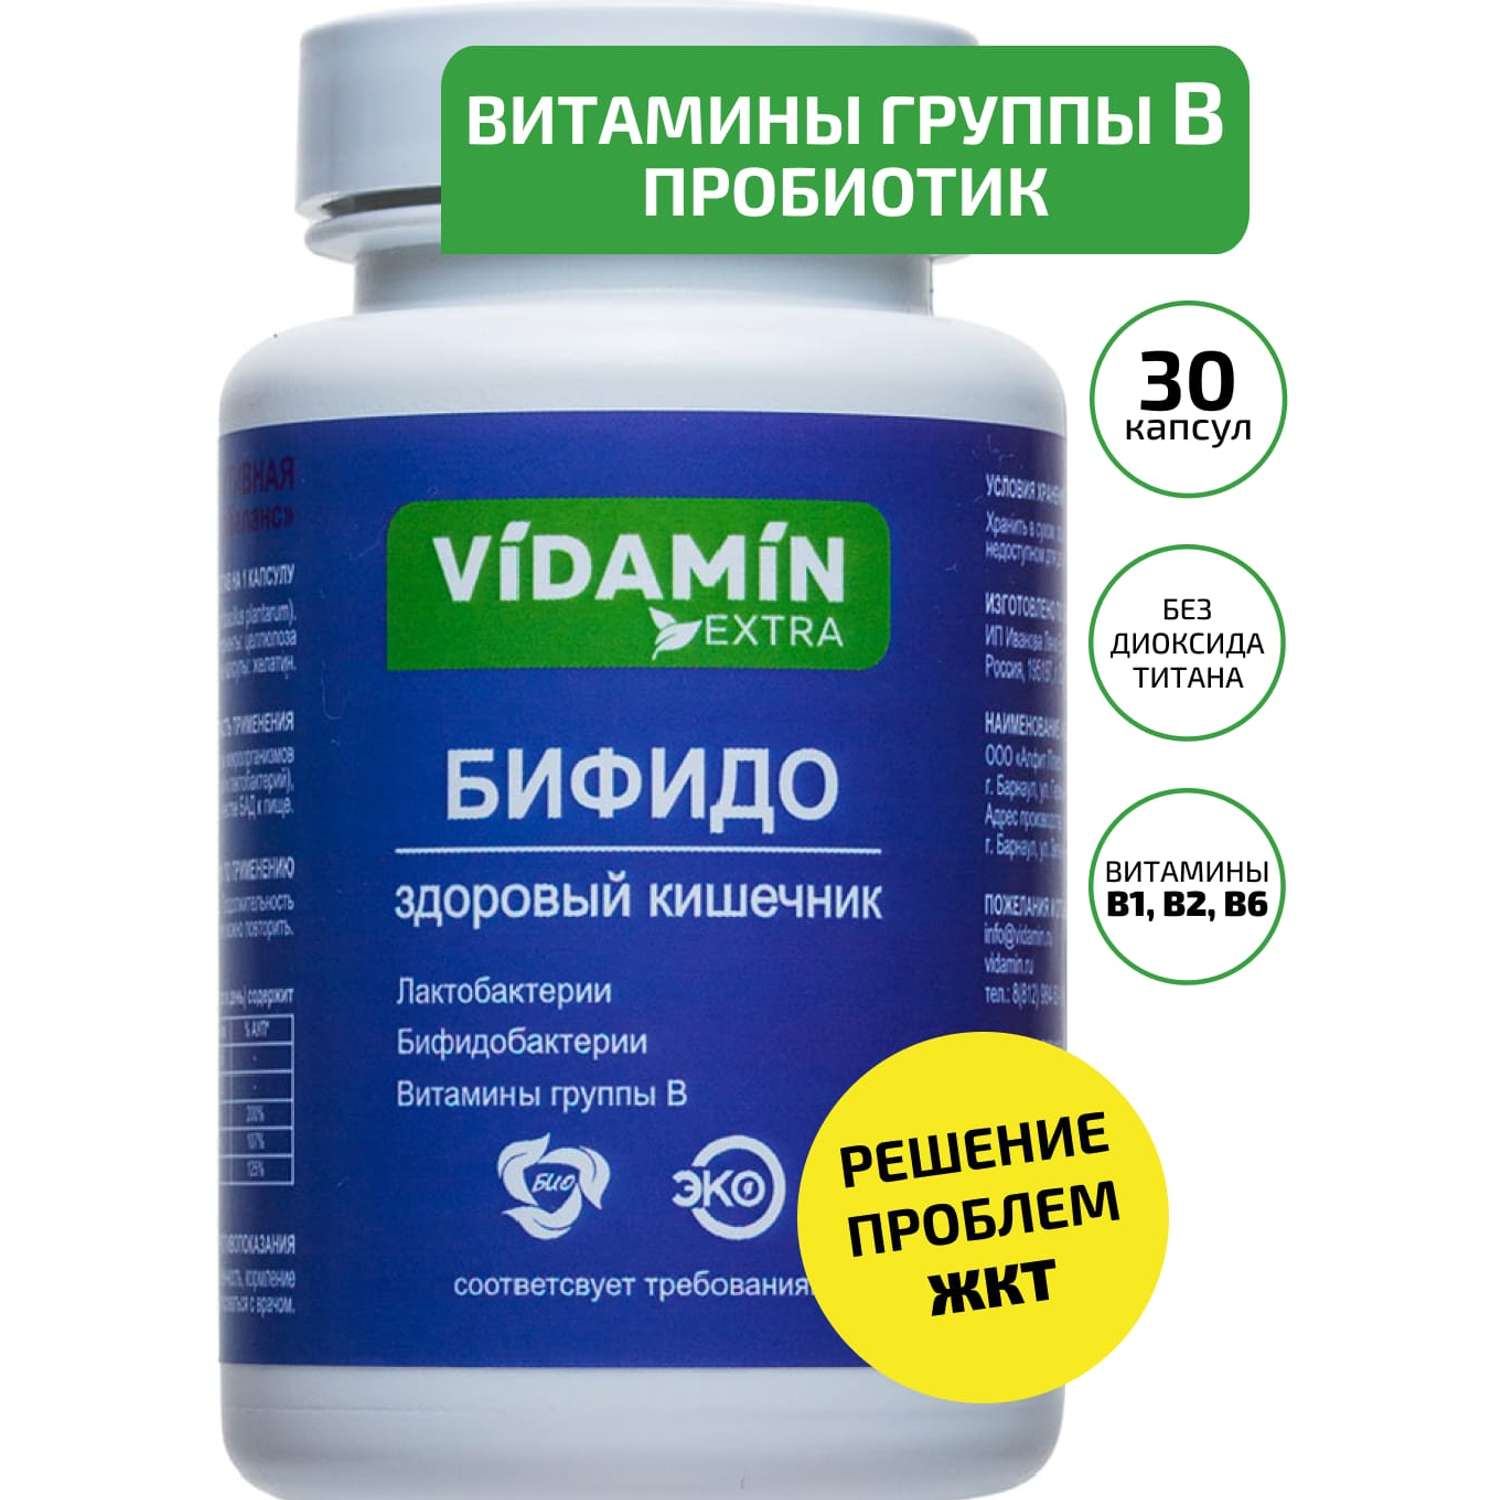 Витамины группы В и пробиотики VIDAMIN EXTRA 30 капсул - фото 1